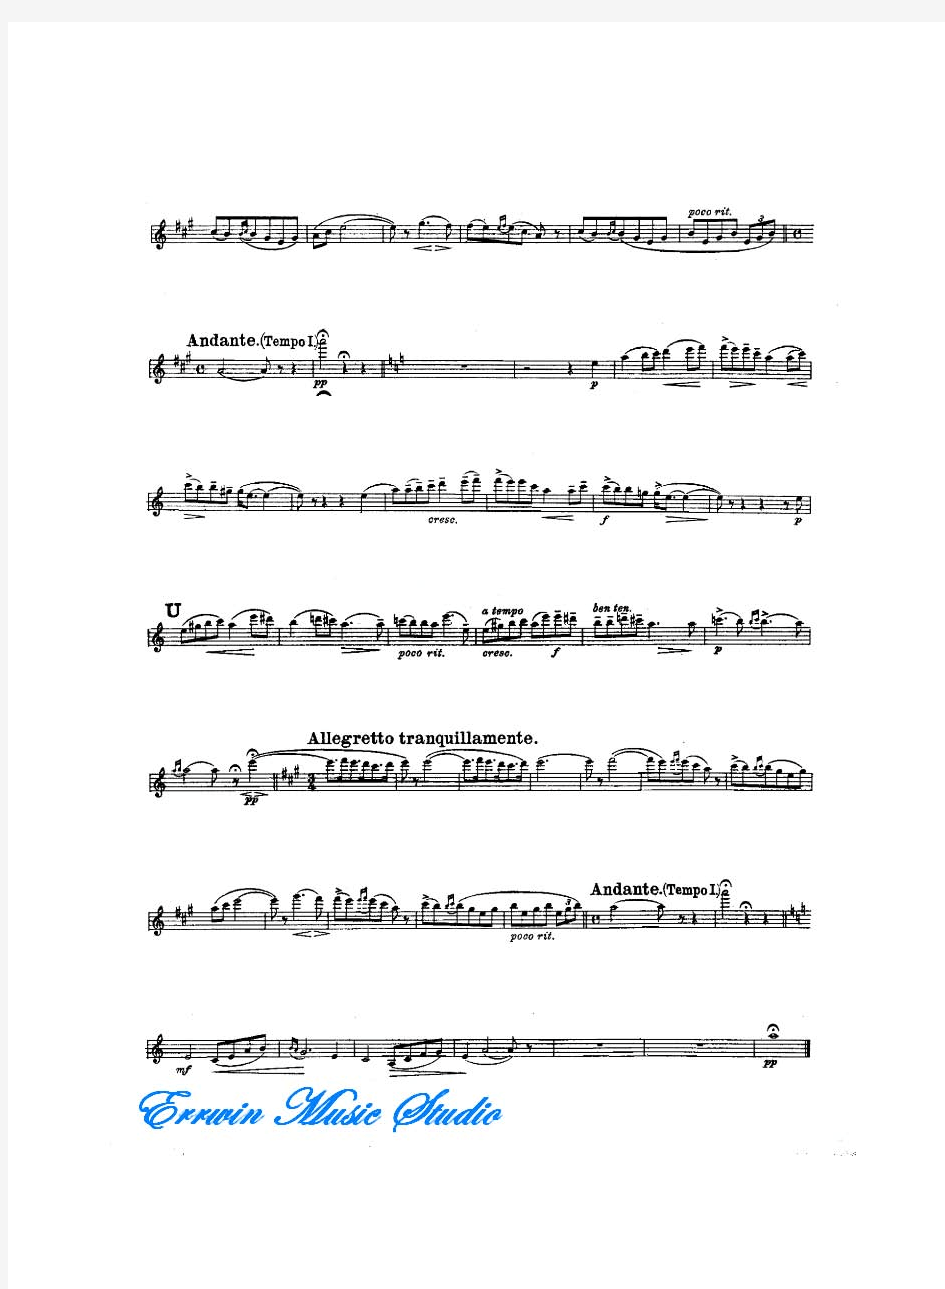 Violin爱德华格里格培尔金特第二组曲4.索尔维格之歌作品.55小提琴曲谱 钢琴伴奏曲谱EdvardGrieg,